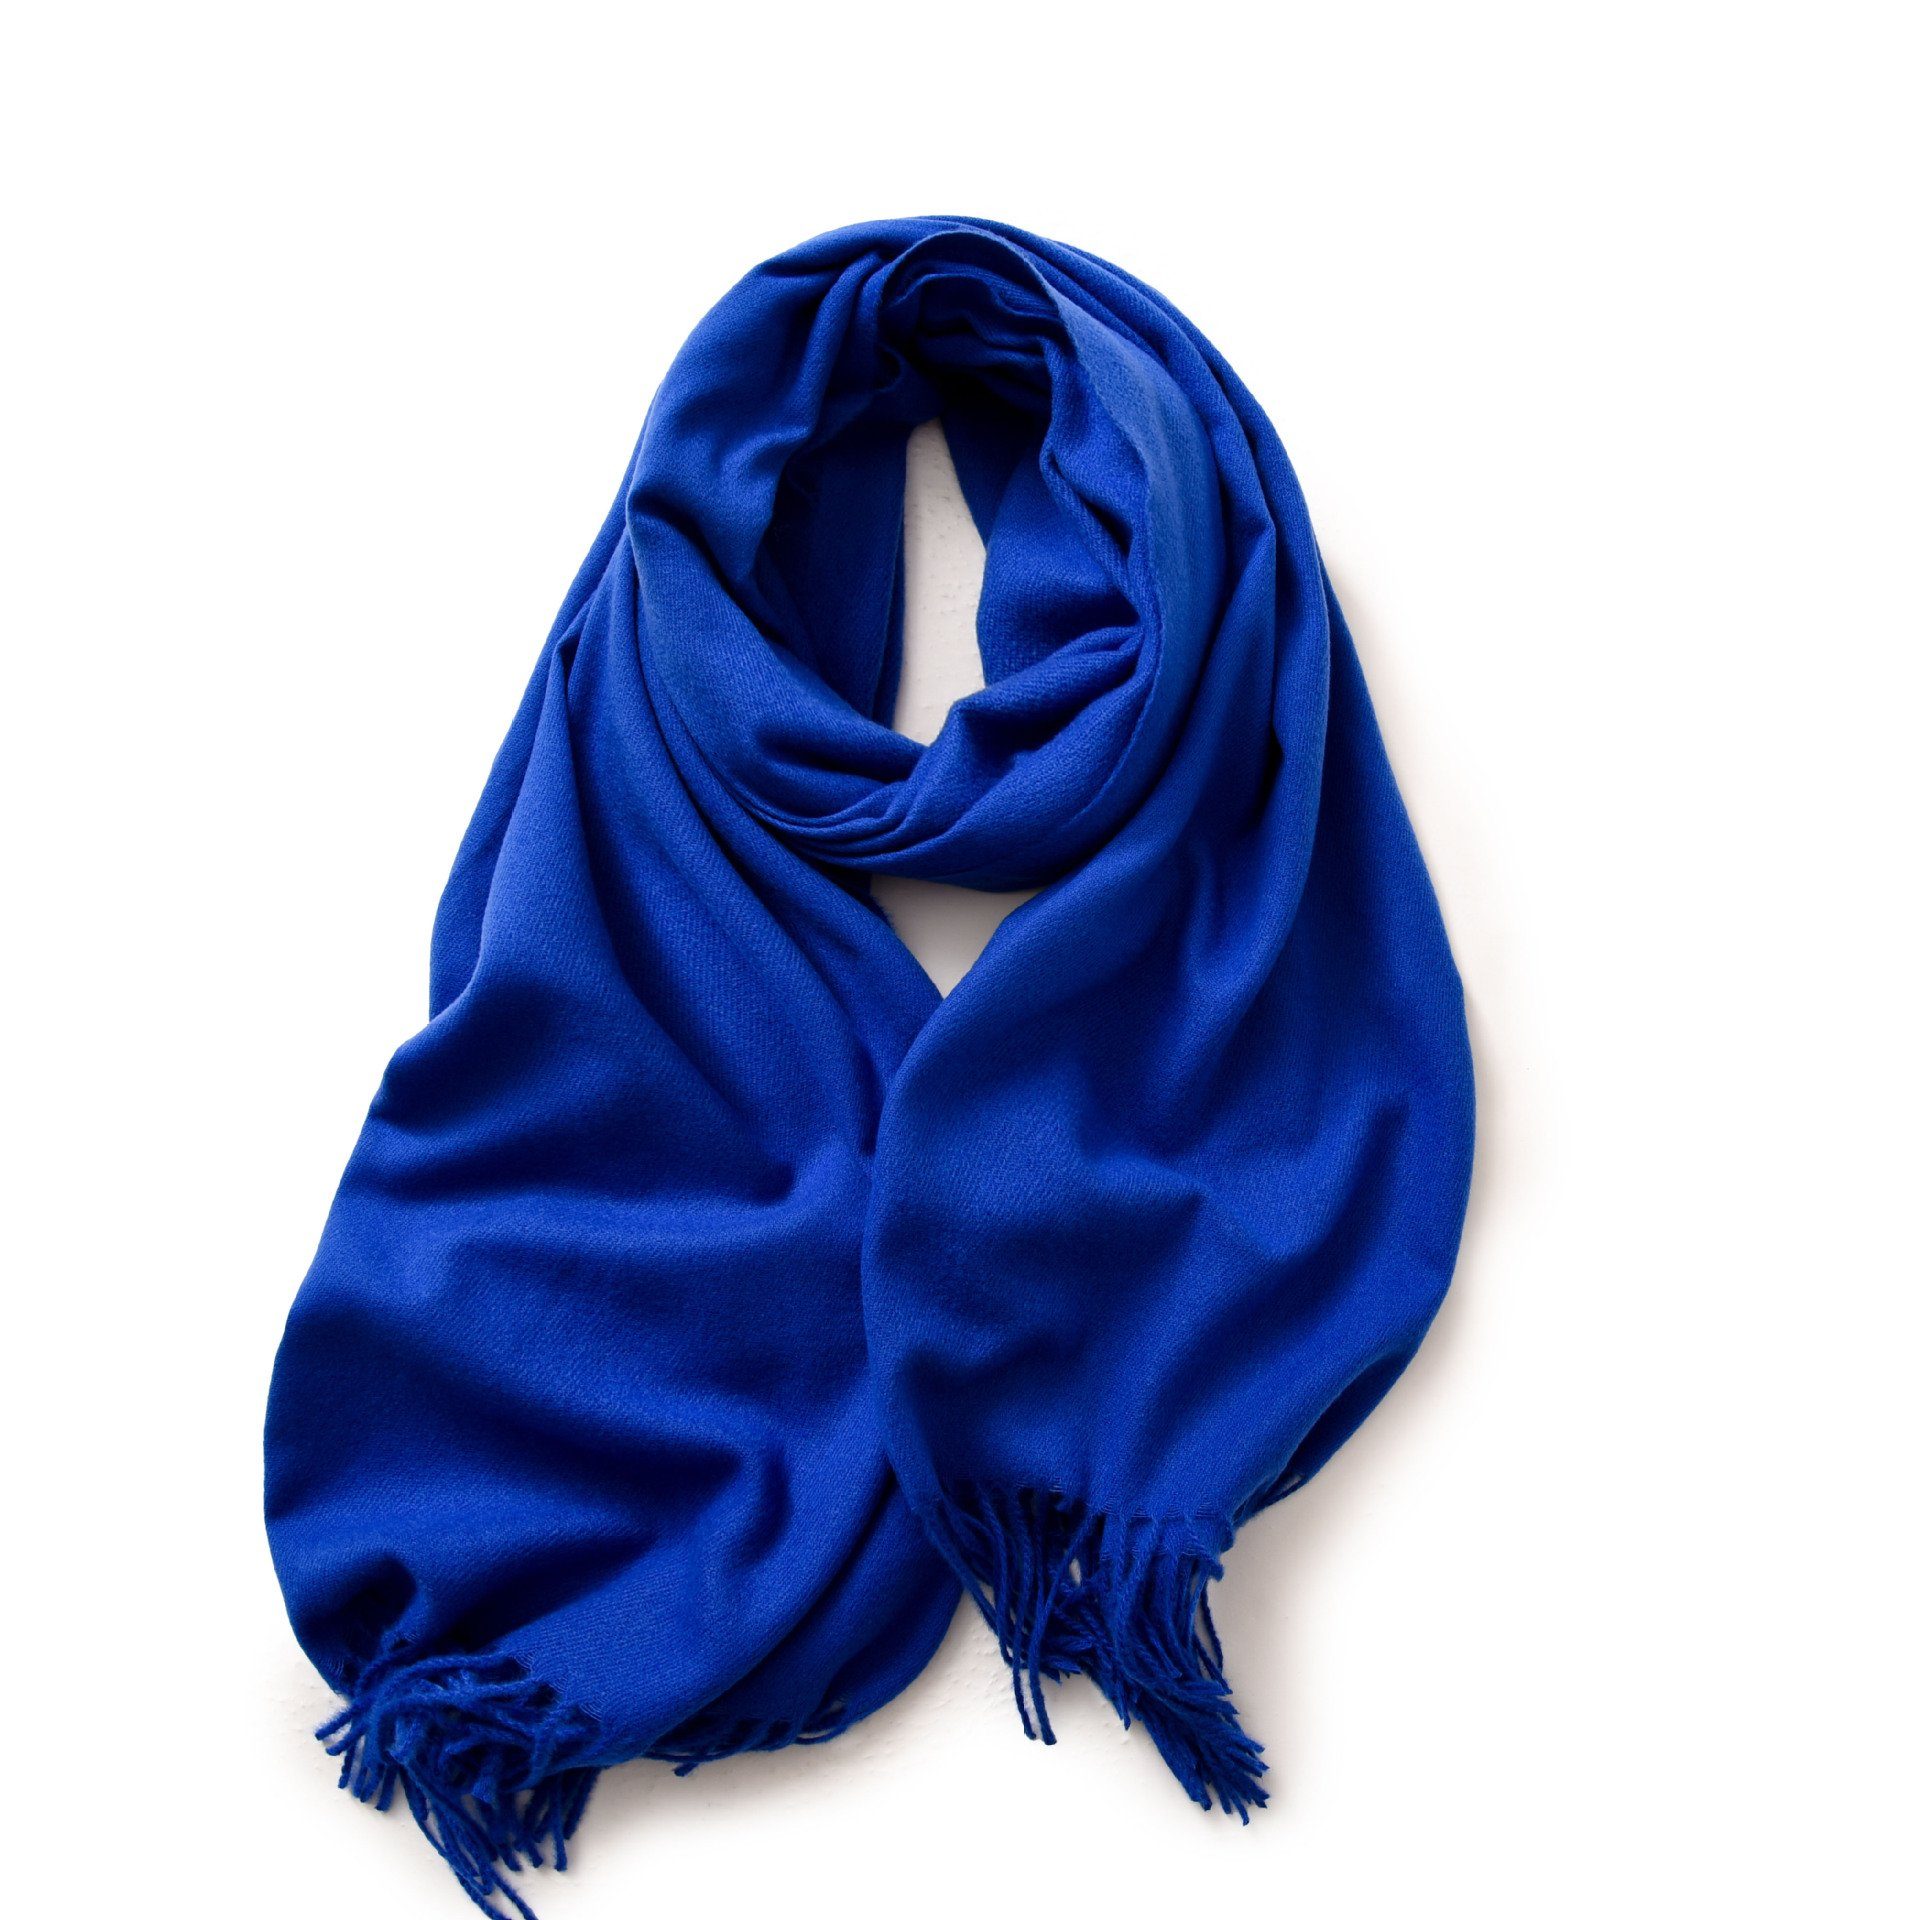 Geschenk Frauen verschiedenen Farben blue01 Damen in Modeschal Qualität,Neuer Schal Halstuch Damen für Poncho Stil, XDeer Schal,kuschelweich,Winter